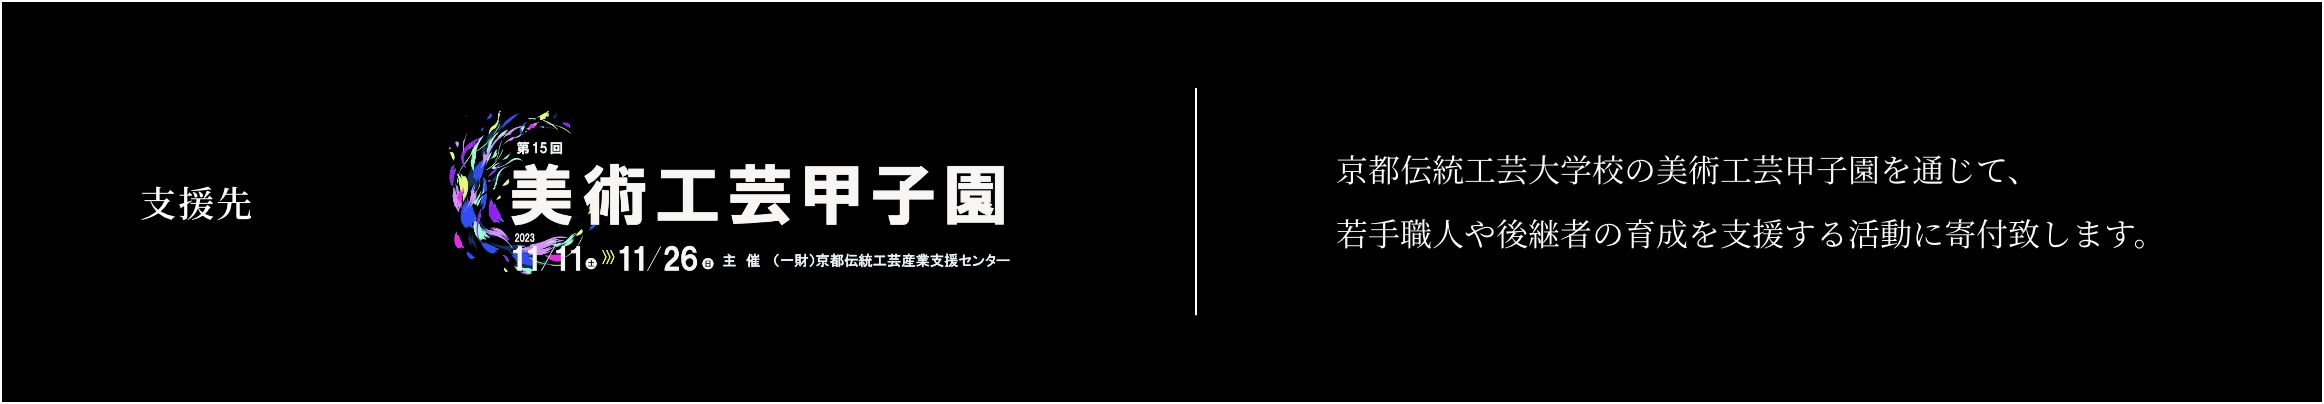 支援先【美術工芸甲子園】京都伝統工芸大学校の美術工芸甲子園を通じて、若手職人や後継者の育成を支援する活動に寄付致します。